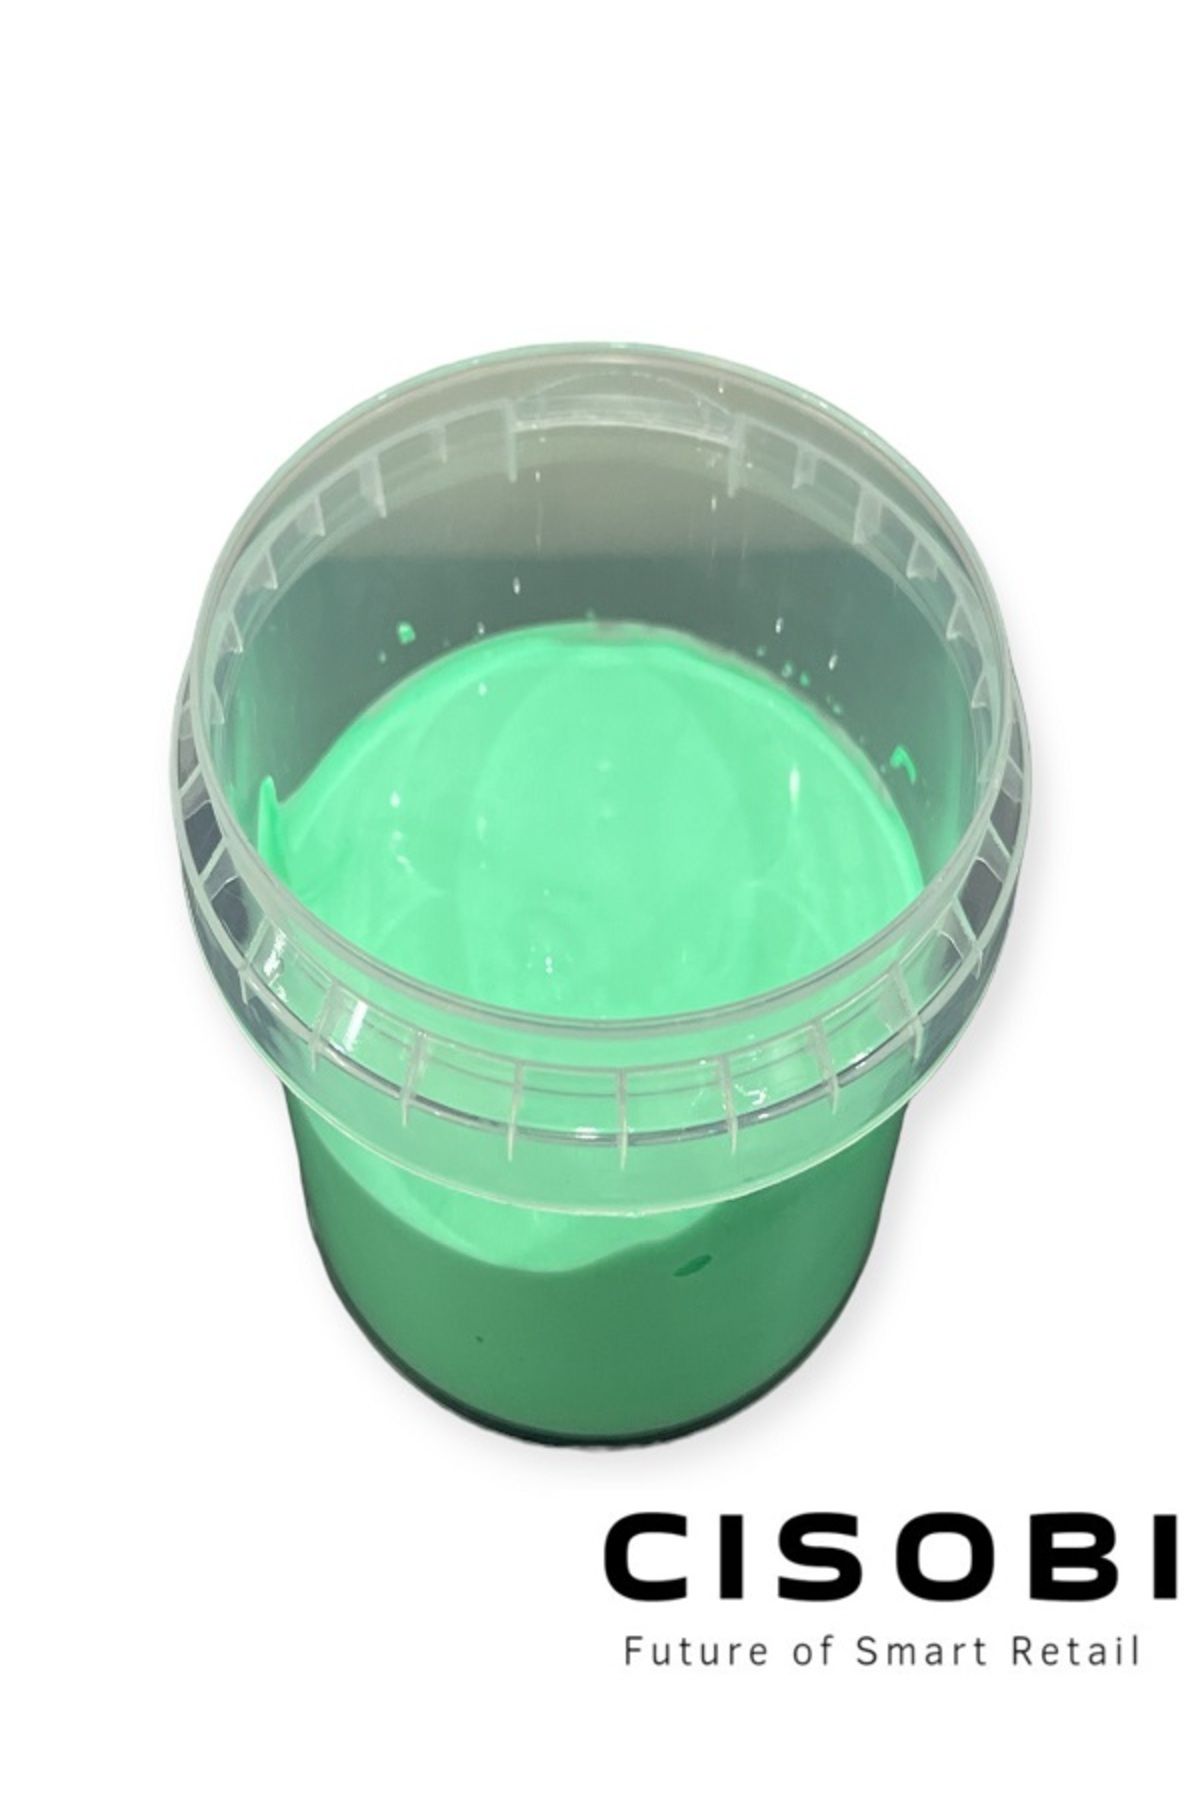 Çisobi Yeşil Renkli Hazır Slime Seti, Ele Yapışmaz Slaym, Kokusuz Sılaym, Duyu Gelişimine Uygun, 170 gr